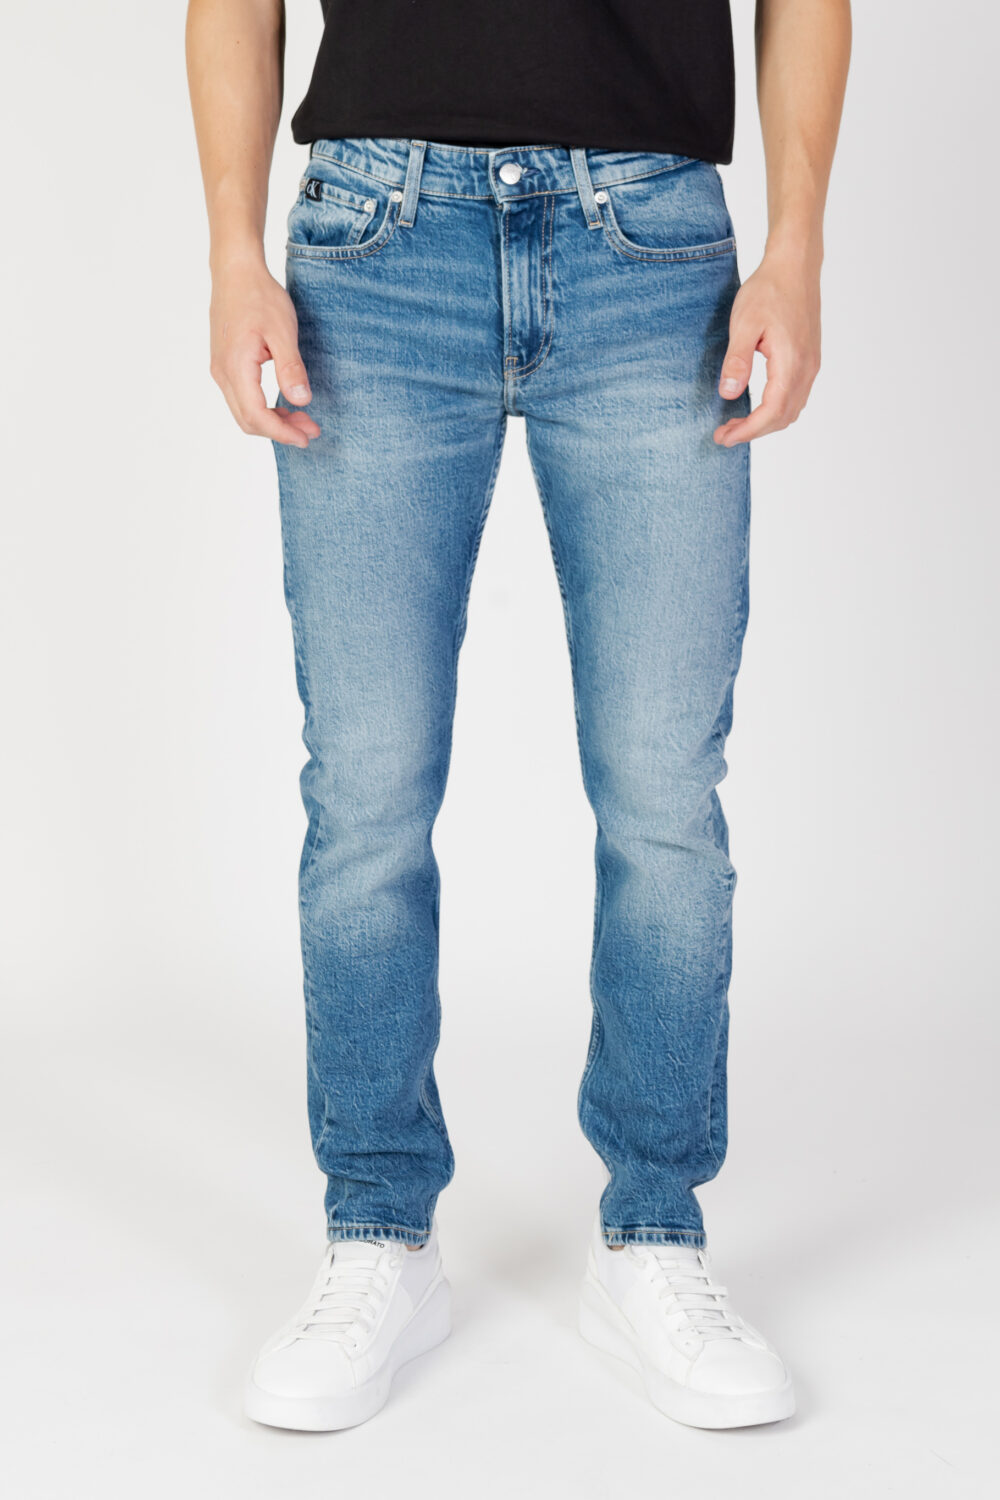 Jeans Tapered Calvin Klein Jeans slim taper Denim - Foto 6